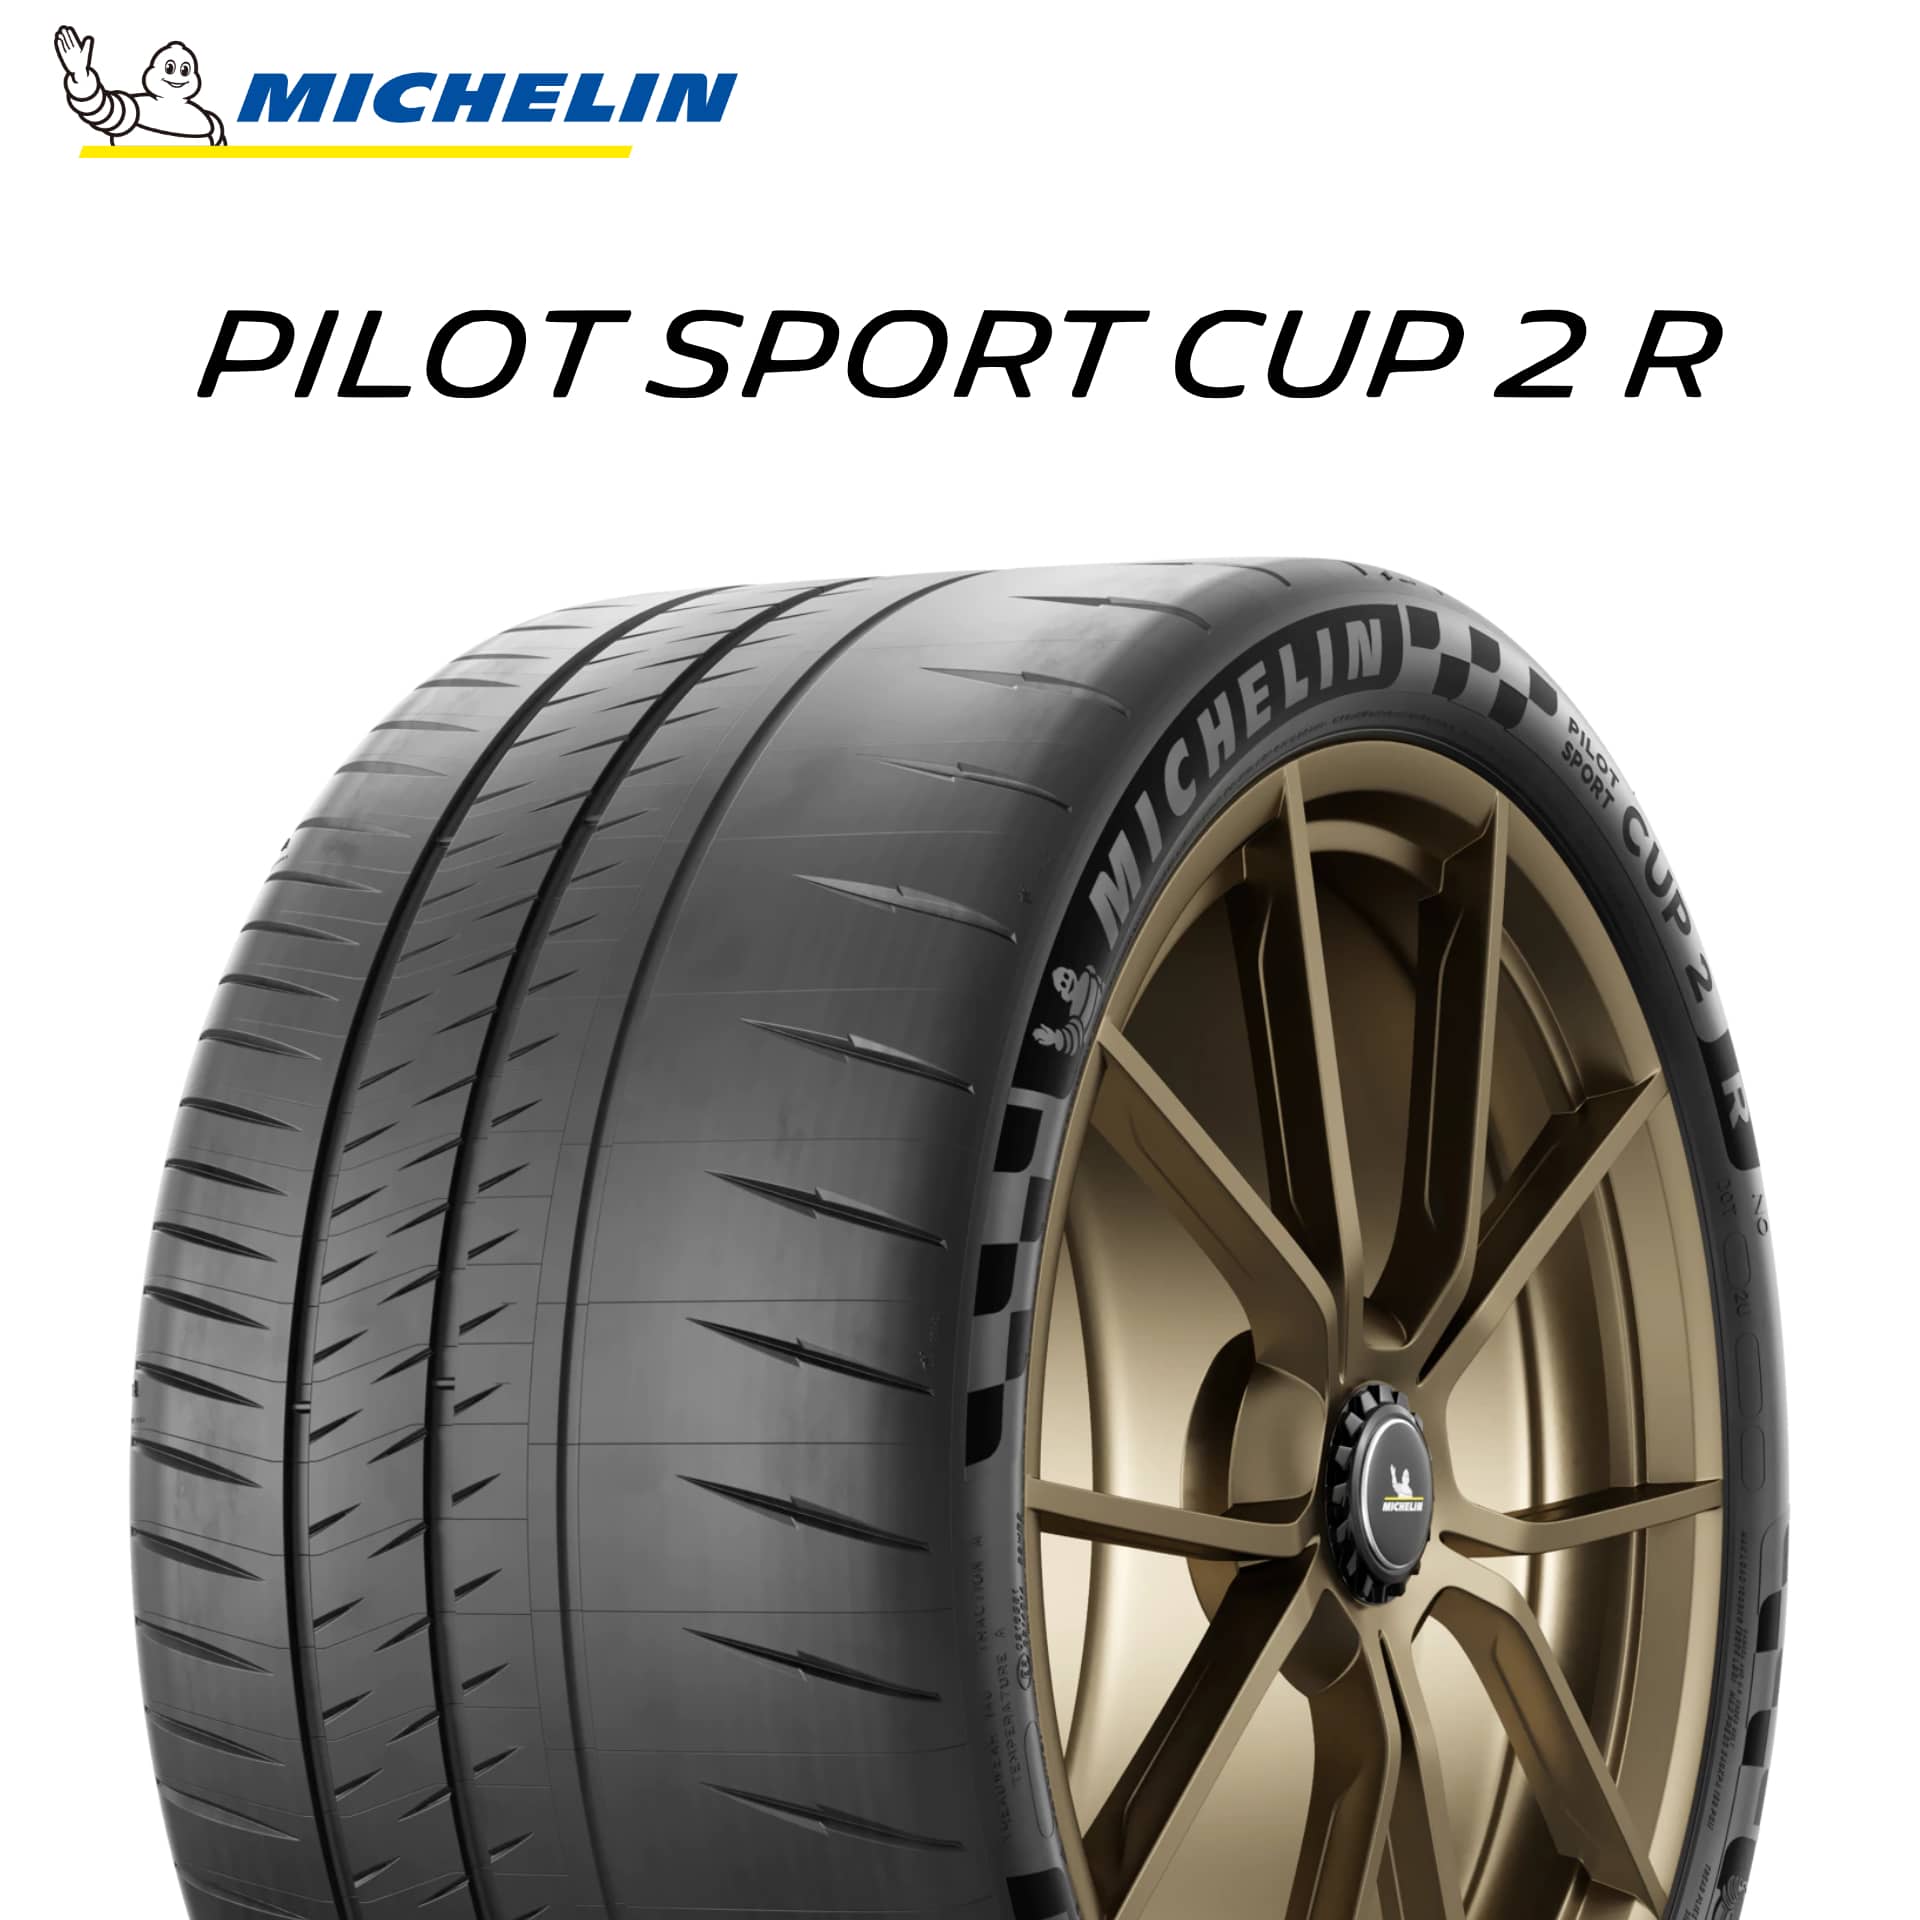 21年製 335/30R20 (108Y) XL MO1A ミシュラン PILOT SPORT CUP 2R for ROAD & Track soft (パイロット スポーツ カップ2R) メルセデスベンツ承認タイヤ GT (ブラックシリーズ) 20インチ 新品